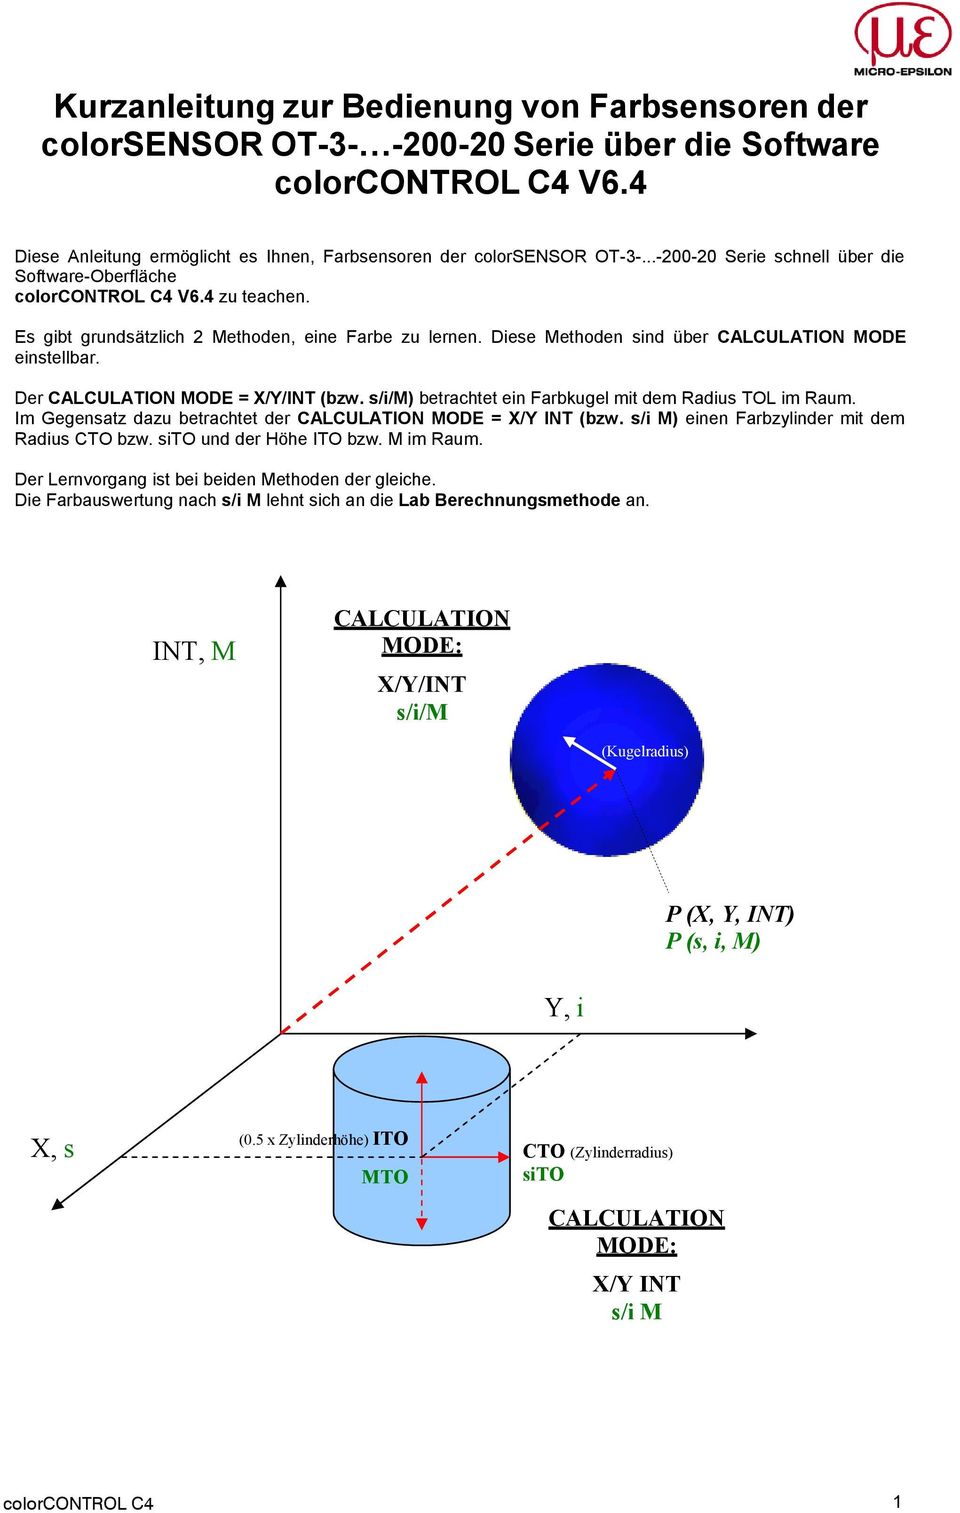 Der CALCULATION MODE = X/Y/INT (bzw. s/i/m) betrachtet ein Farbkugel mit dem Radius TOL im Raum. Im Gegensatz dazu betrachtet der CALCULATION MODE = X/Y INT (bzw.